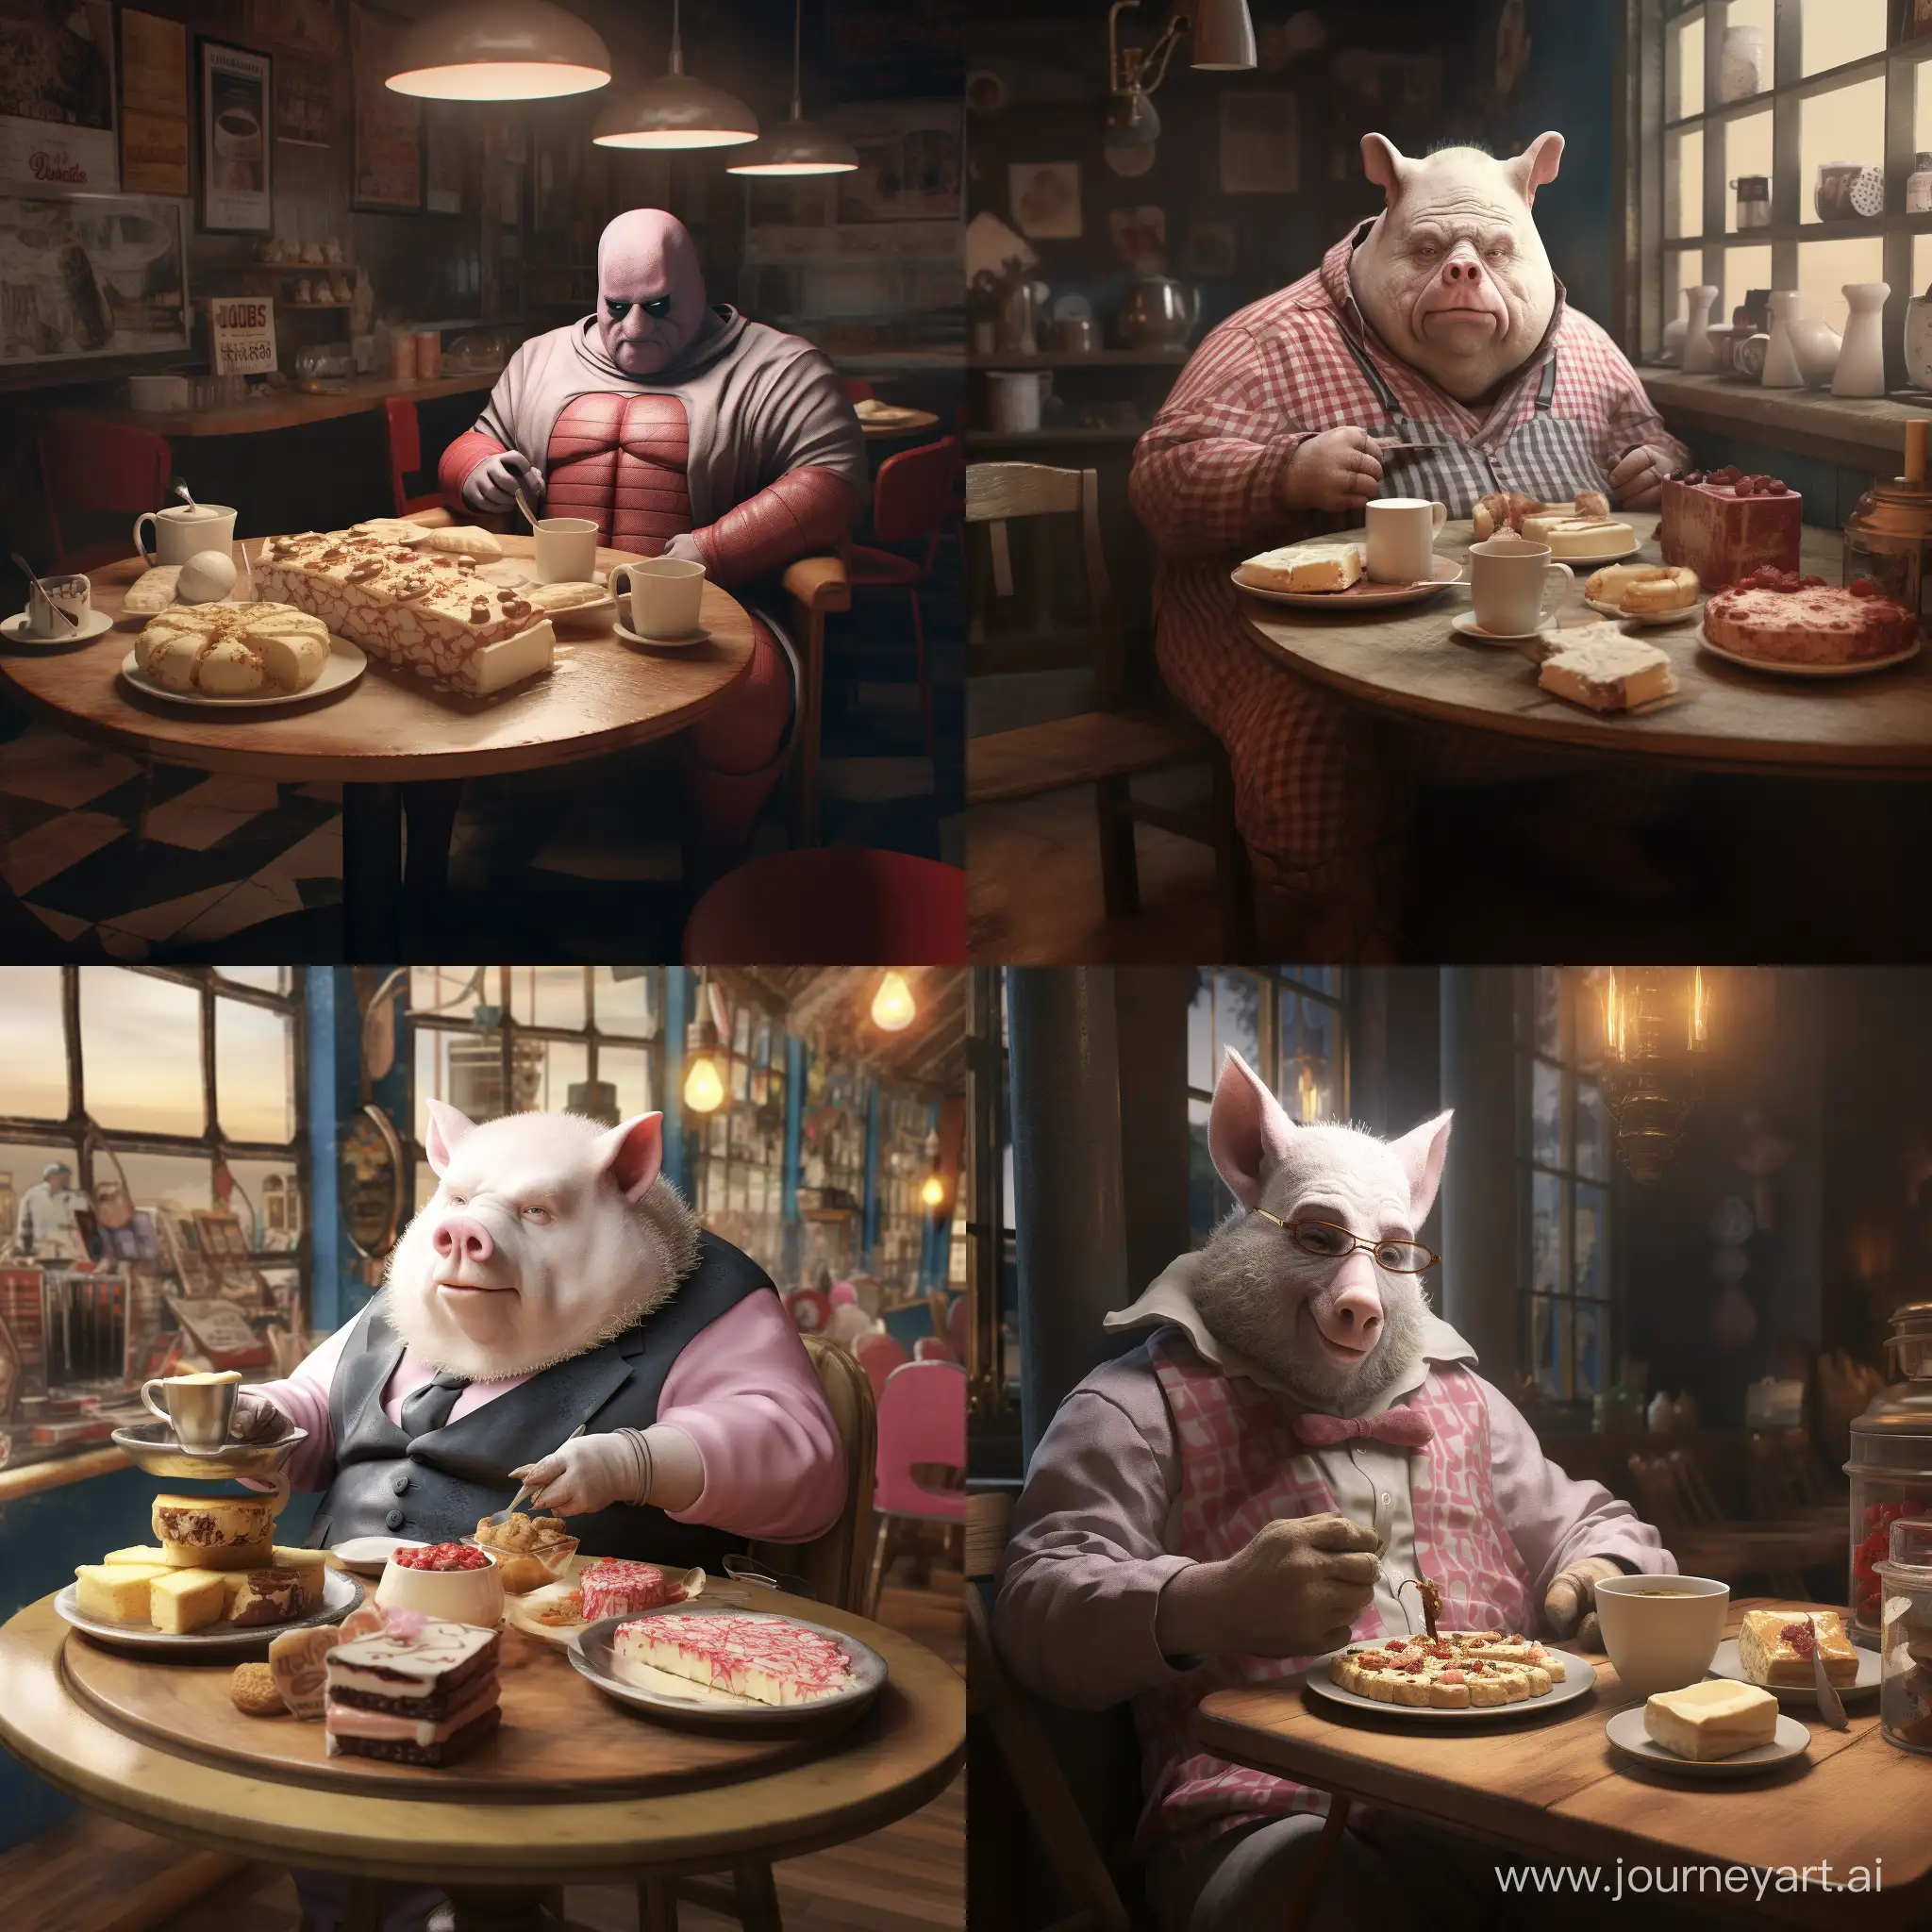 супер реалистичная сцена где свиночеловек сидит в кафе и есть чизкейки